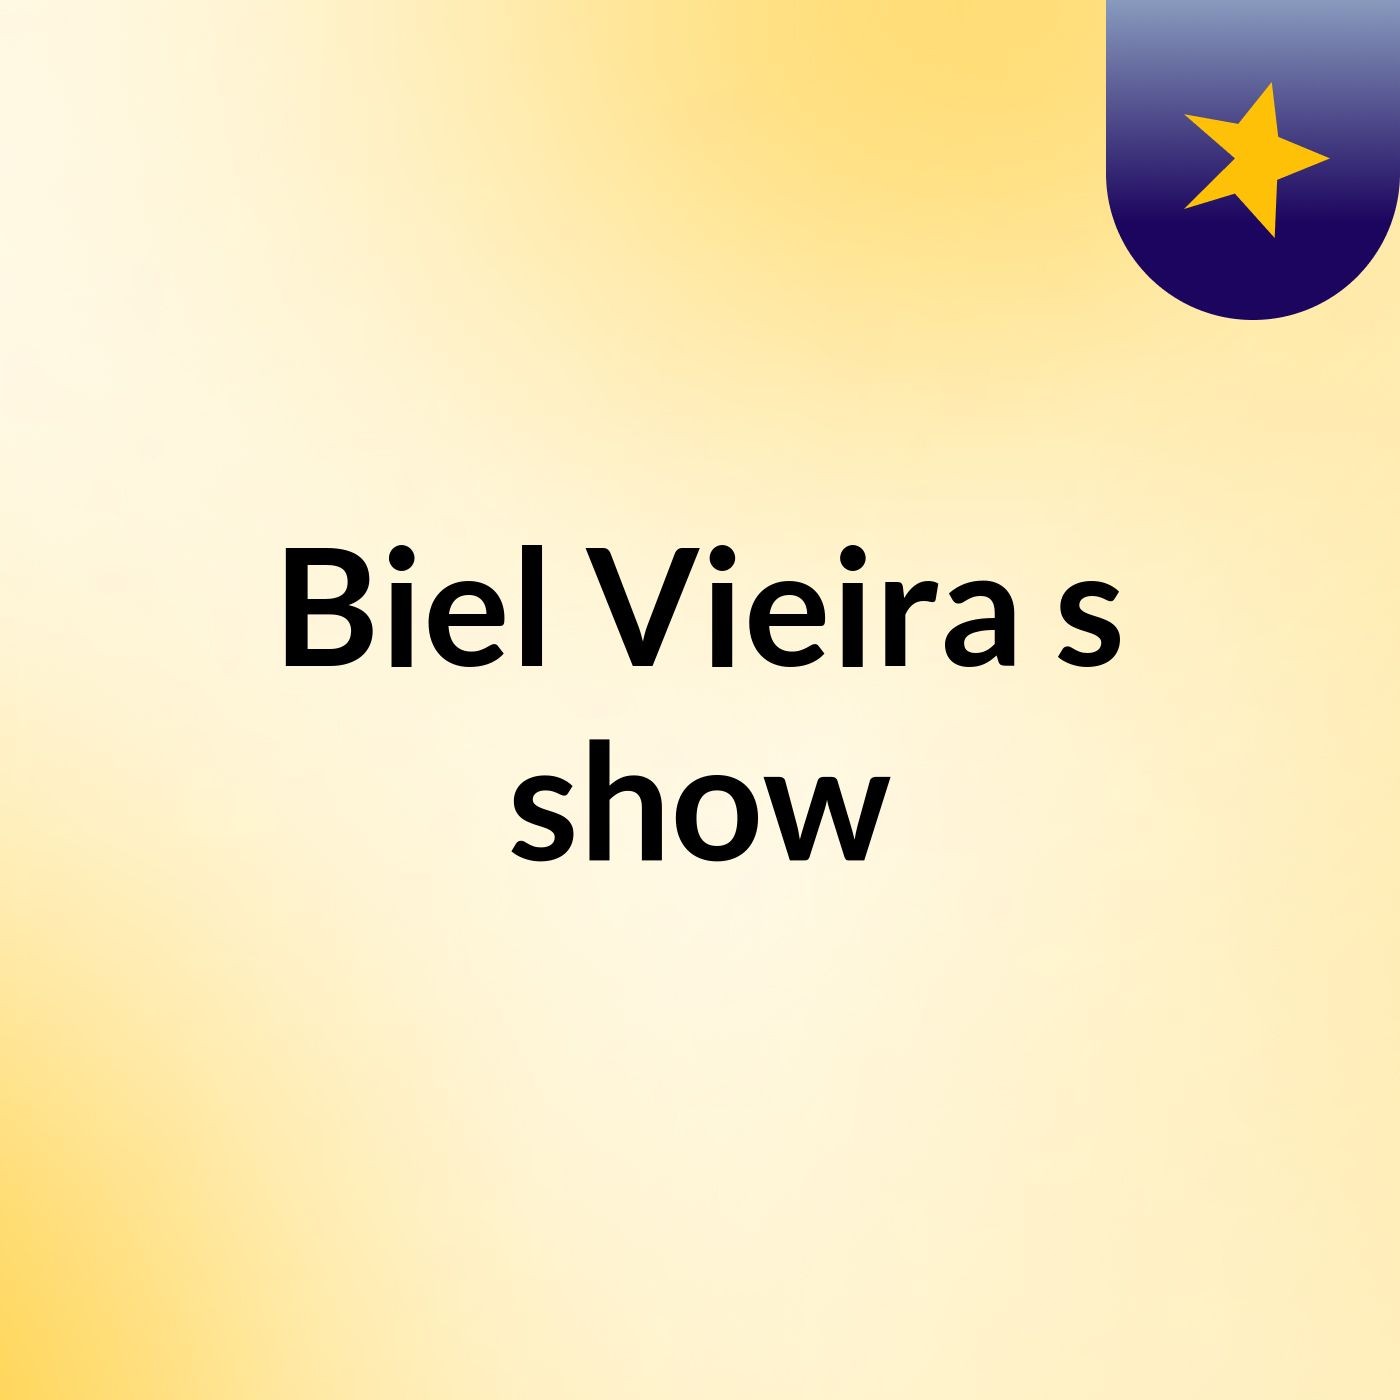 Biel Vieira's show